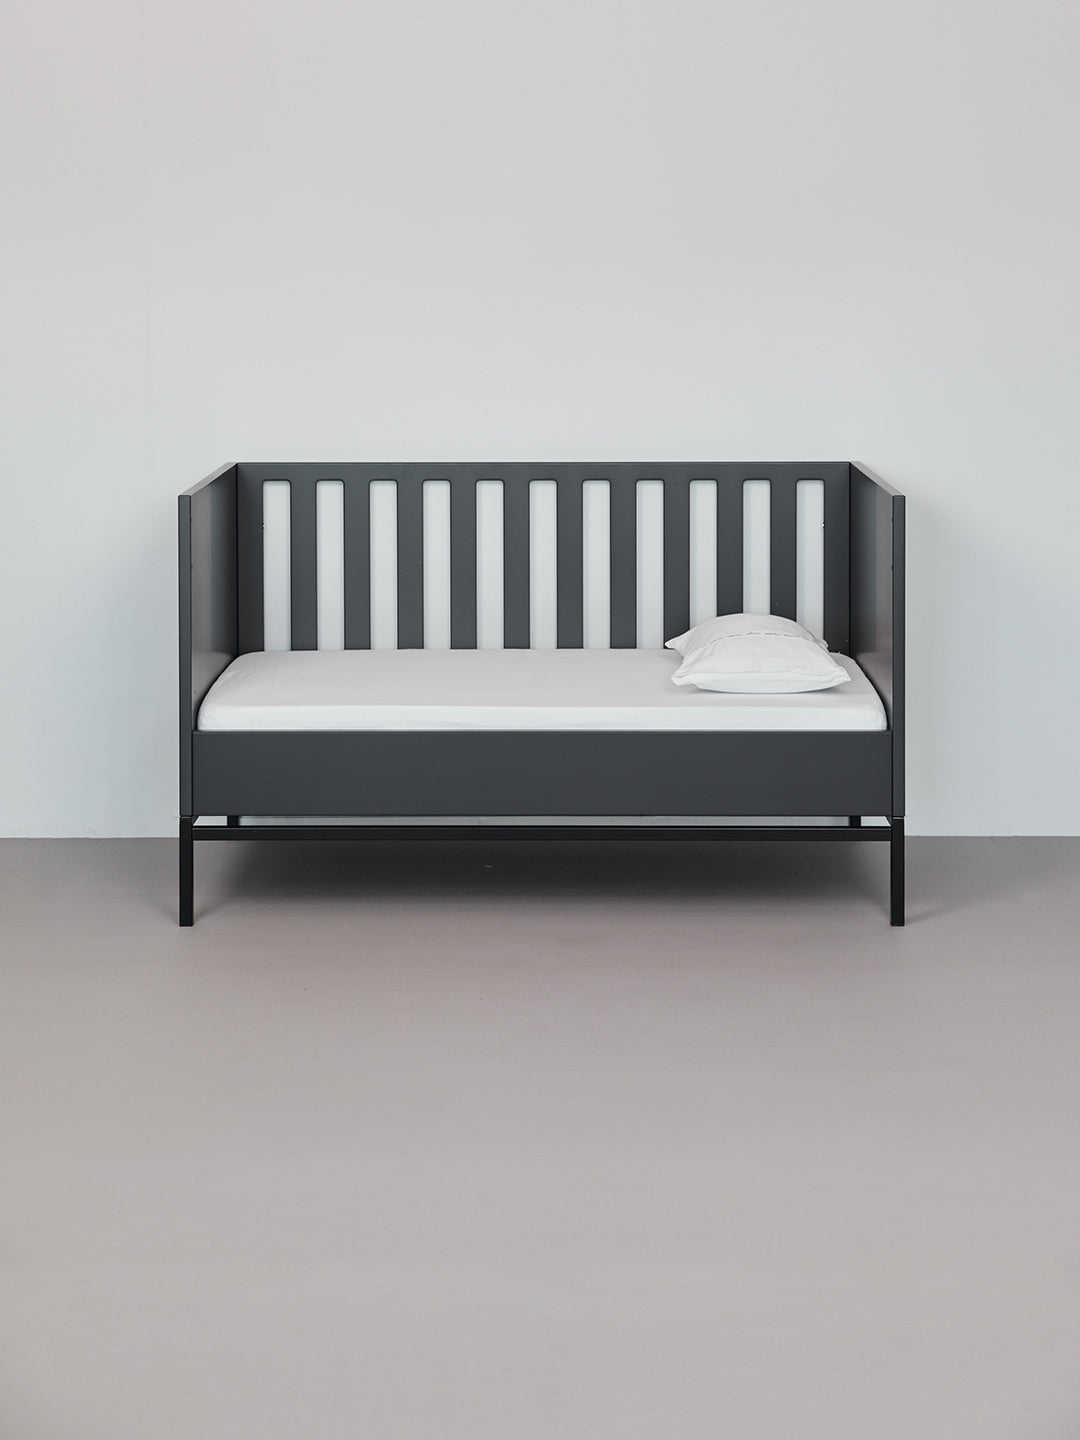 כרית עם ציפית לכרית קטנה  בצבע לבן בתוך מיטת תינוק שחורה